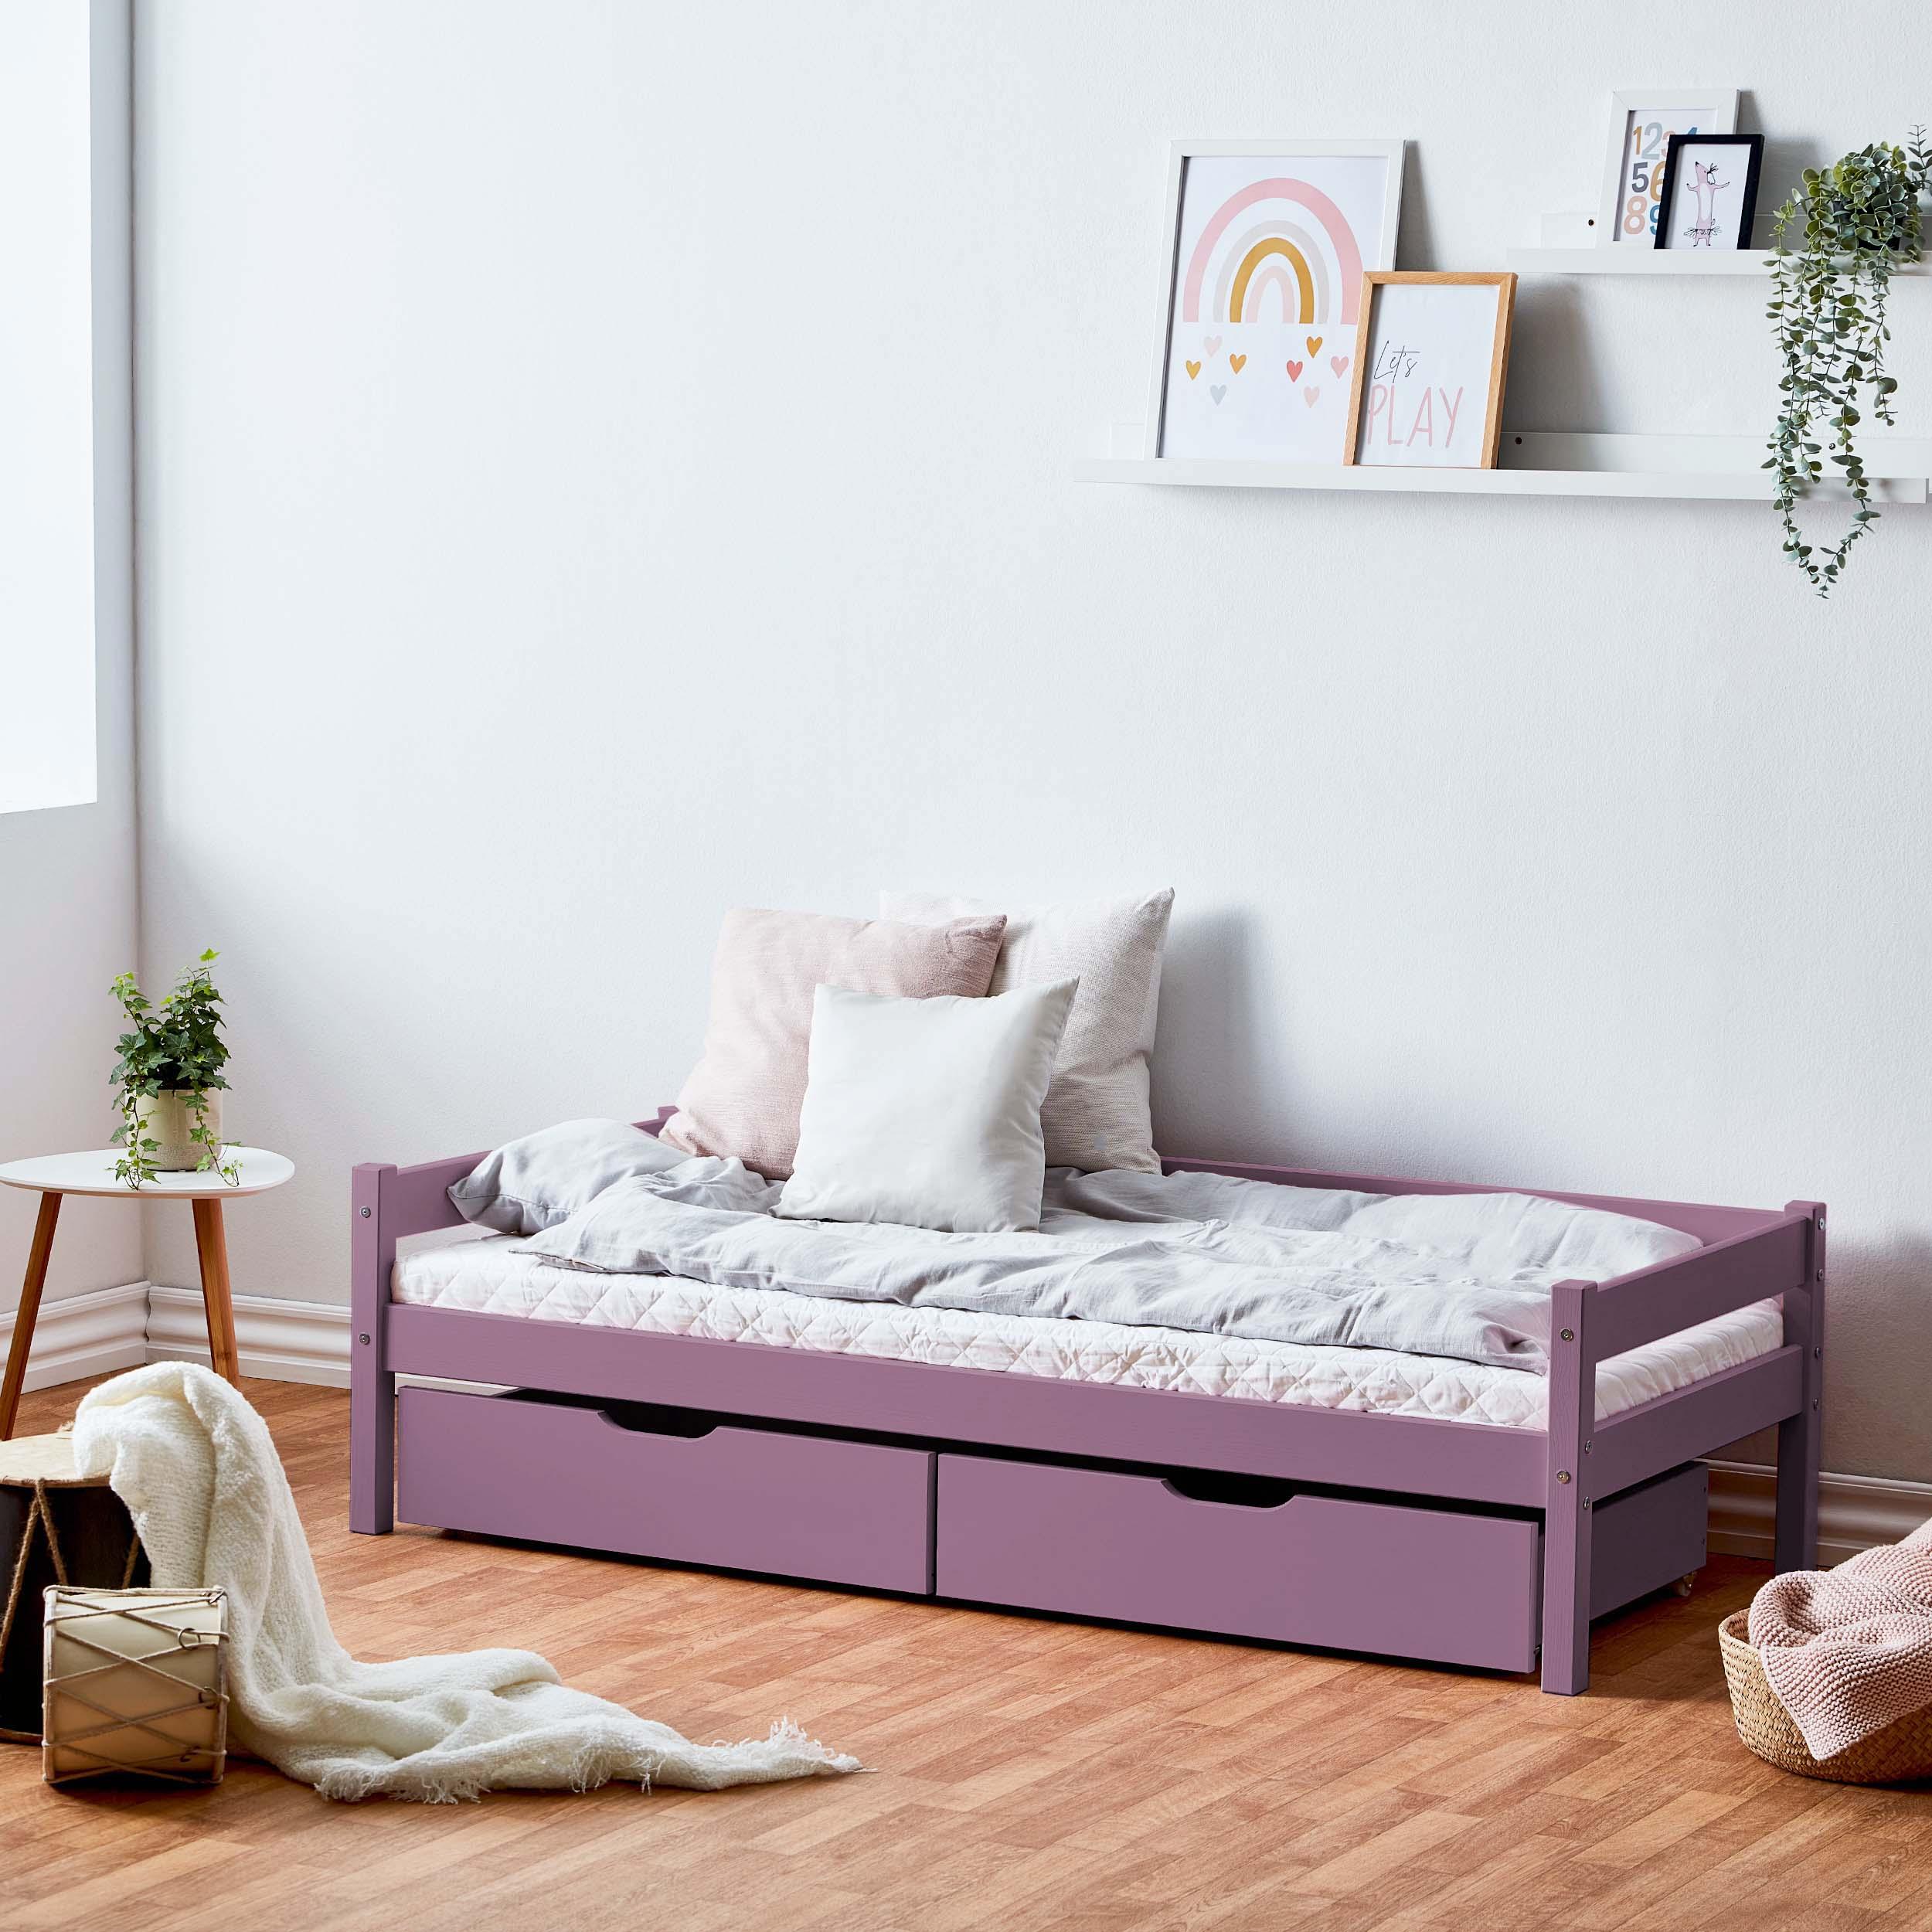 Bedpakket: Juniorbed 70x160 cm met lades, Lavendel